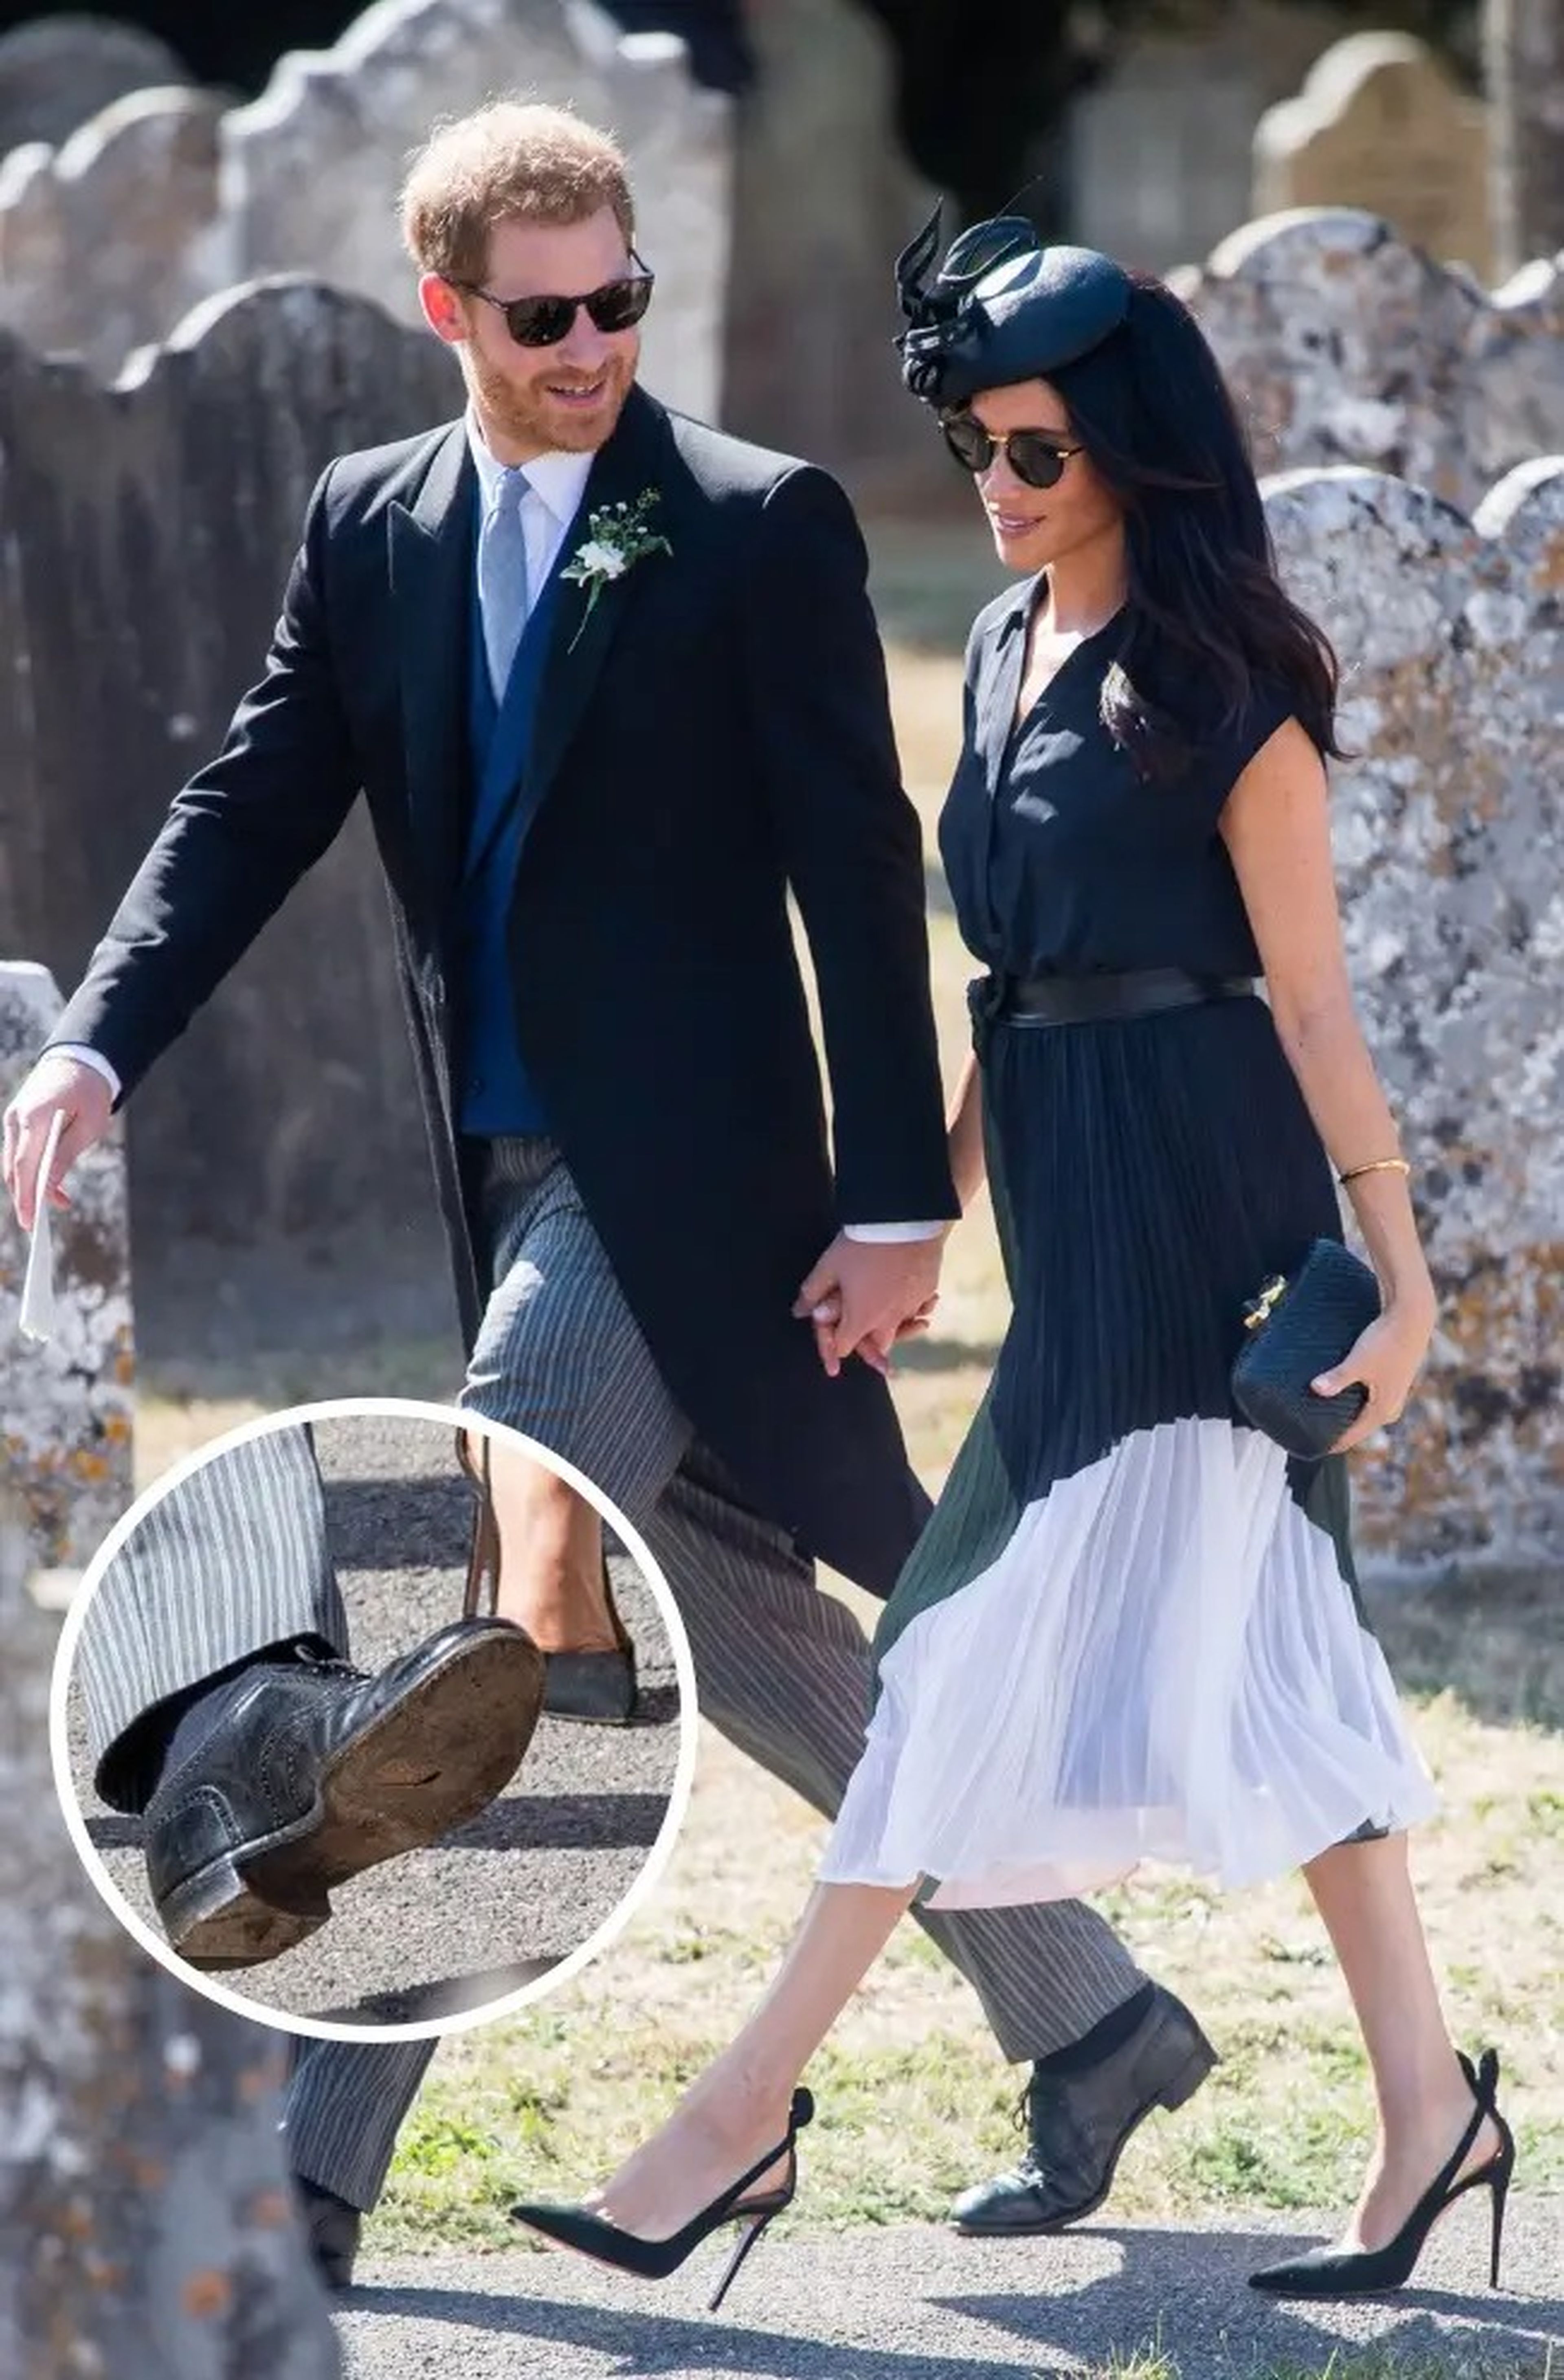 El príncipe Harry llevó zapatos con agujeros en la suela a una boda en 2018.